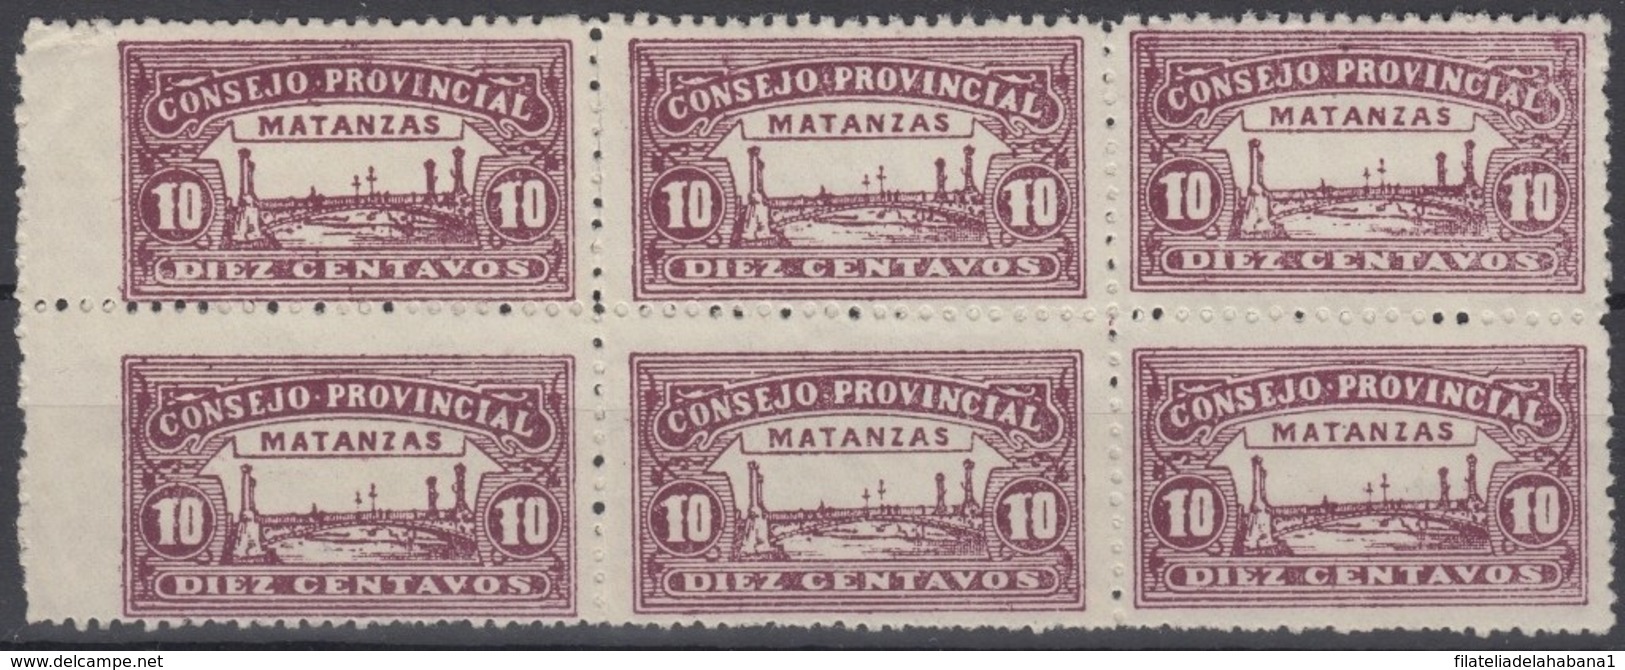 LOC-89 CUBA REPUBLICA. 1903. LOCAL REVENUE MATANZAS. 10c PERFORATED BLOCK 6. NO GUM. - Segnatasse